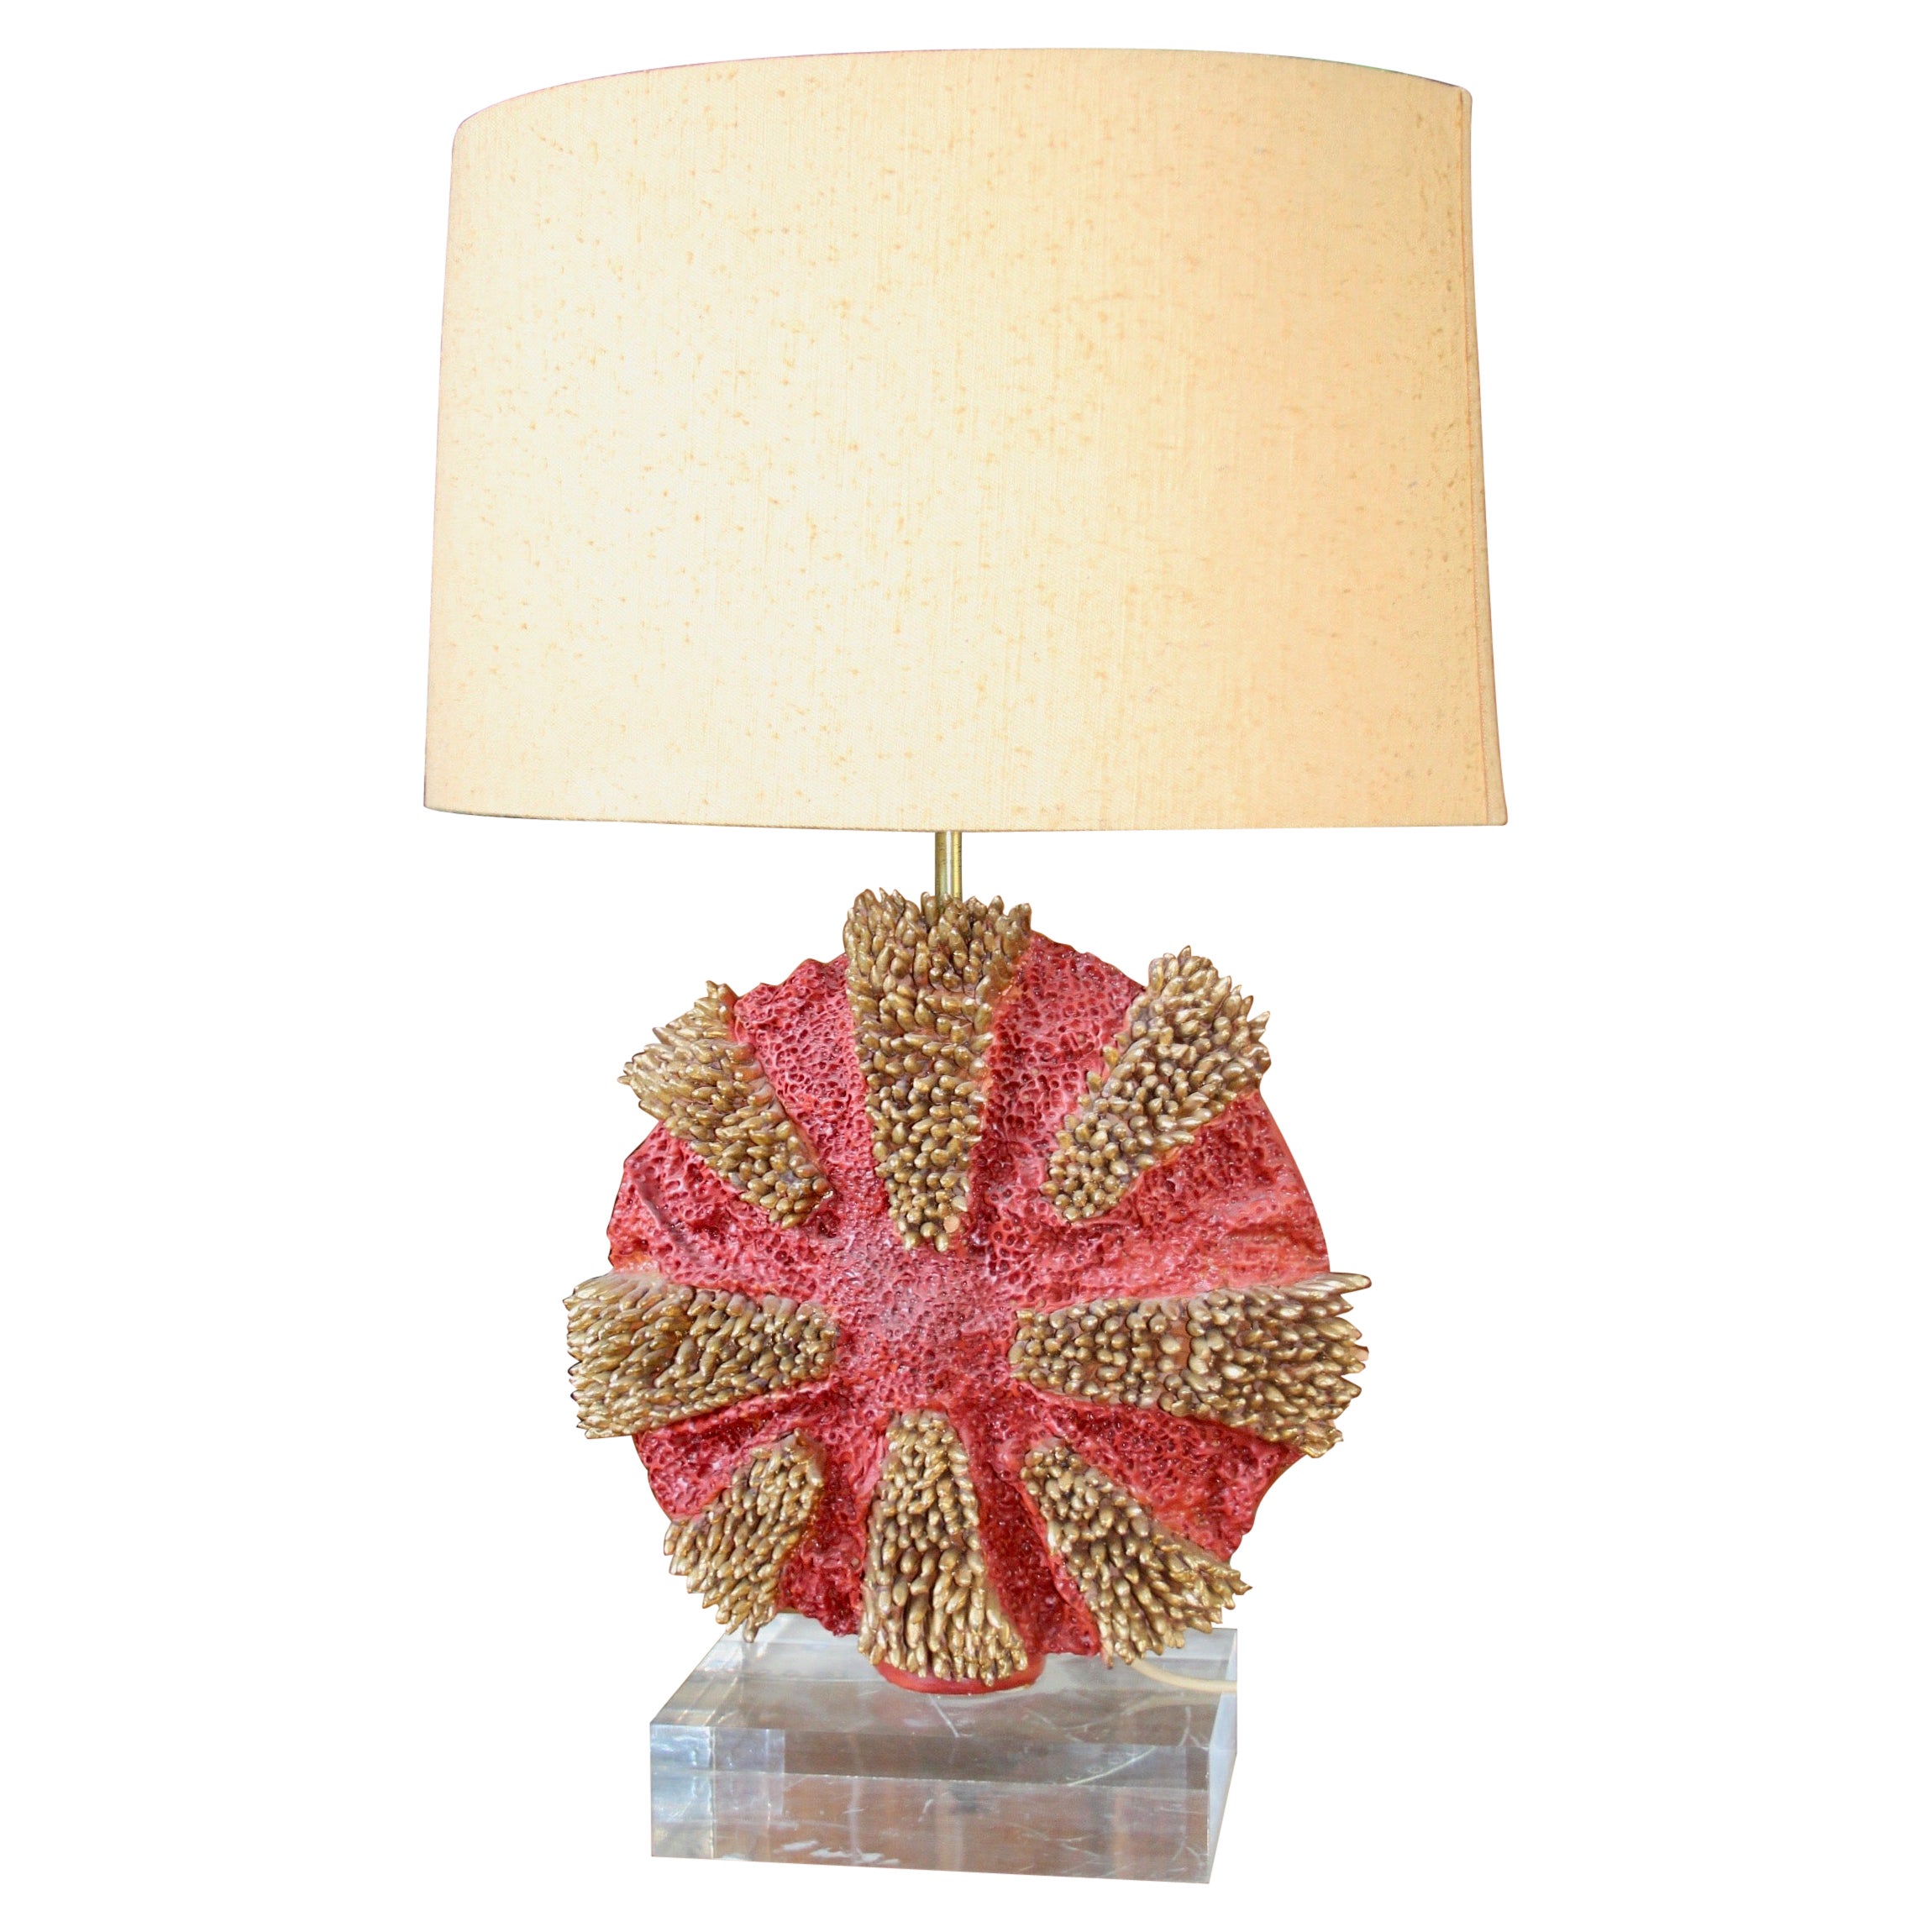 Ceramic coral table lamp